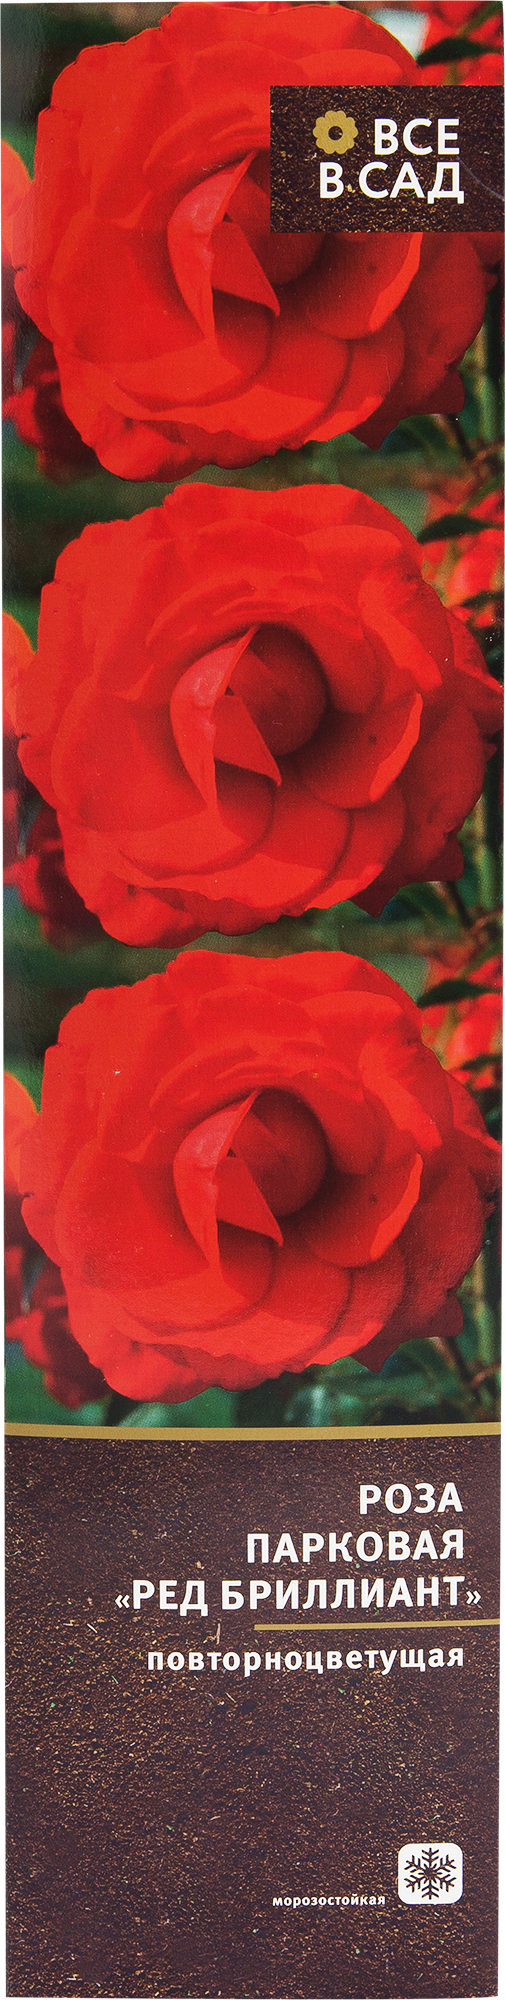 Роза парковая «Ред Бриллиант» в тубе в Москве – купить по низкой цене в интернет-магазине Леруа Мерлен